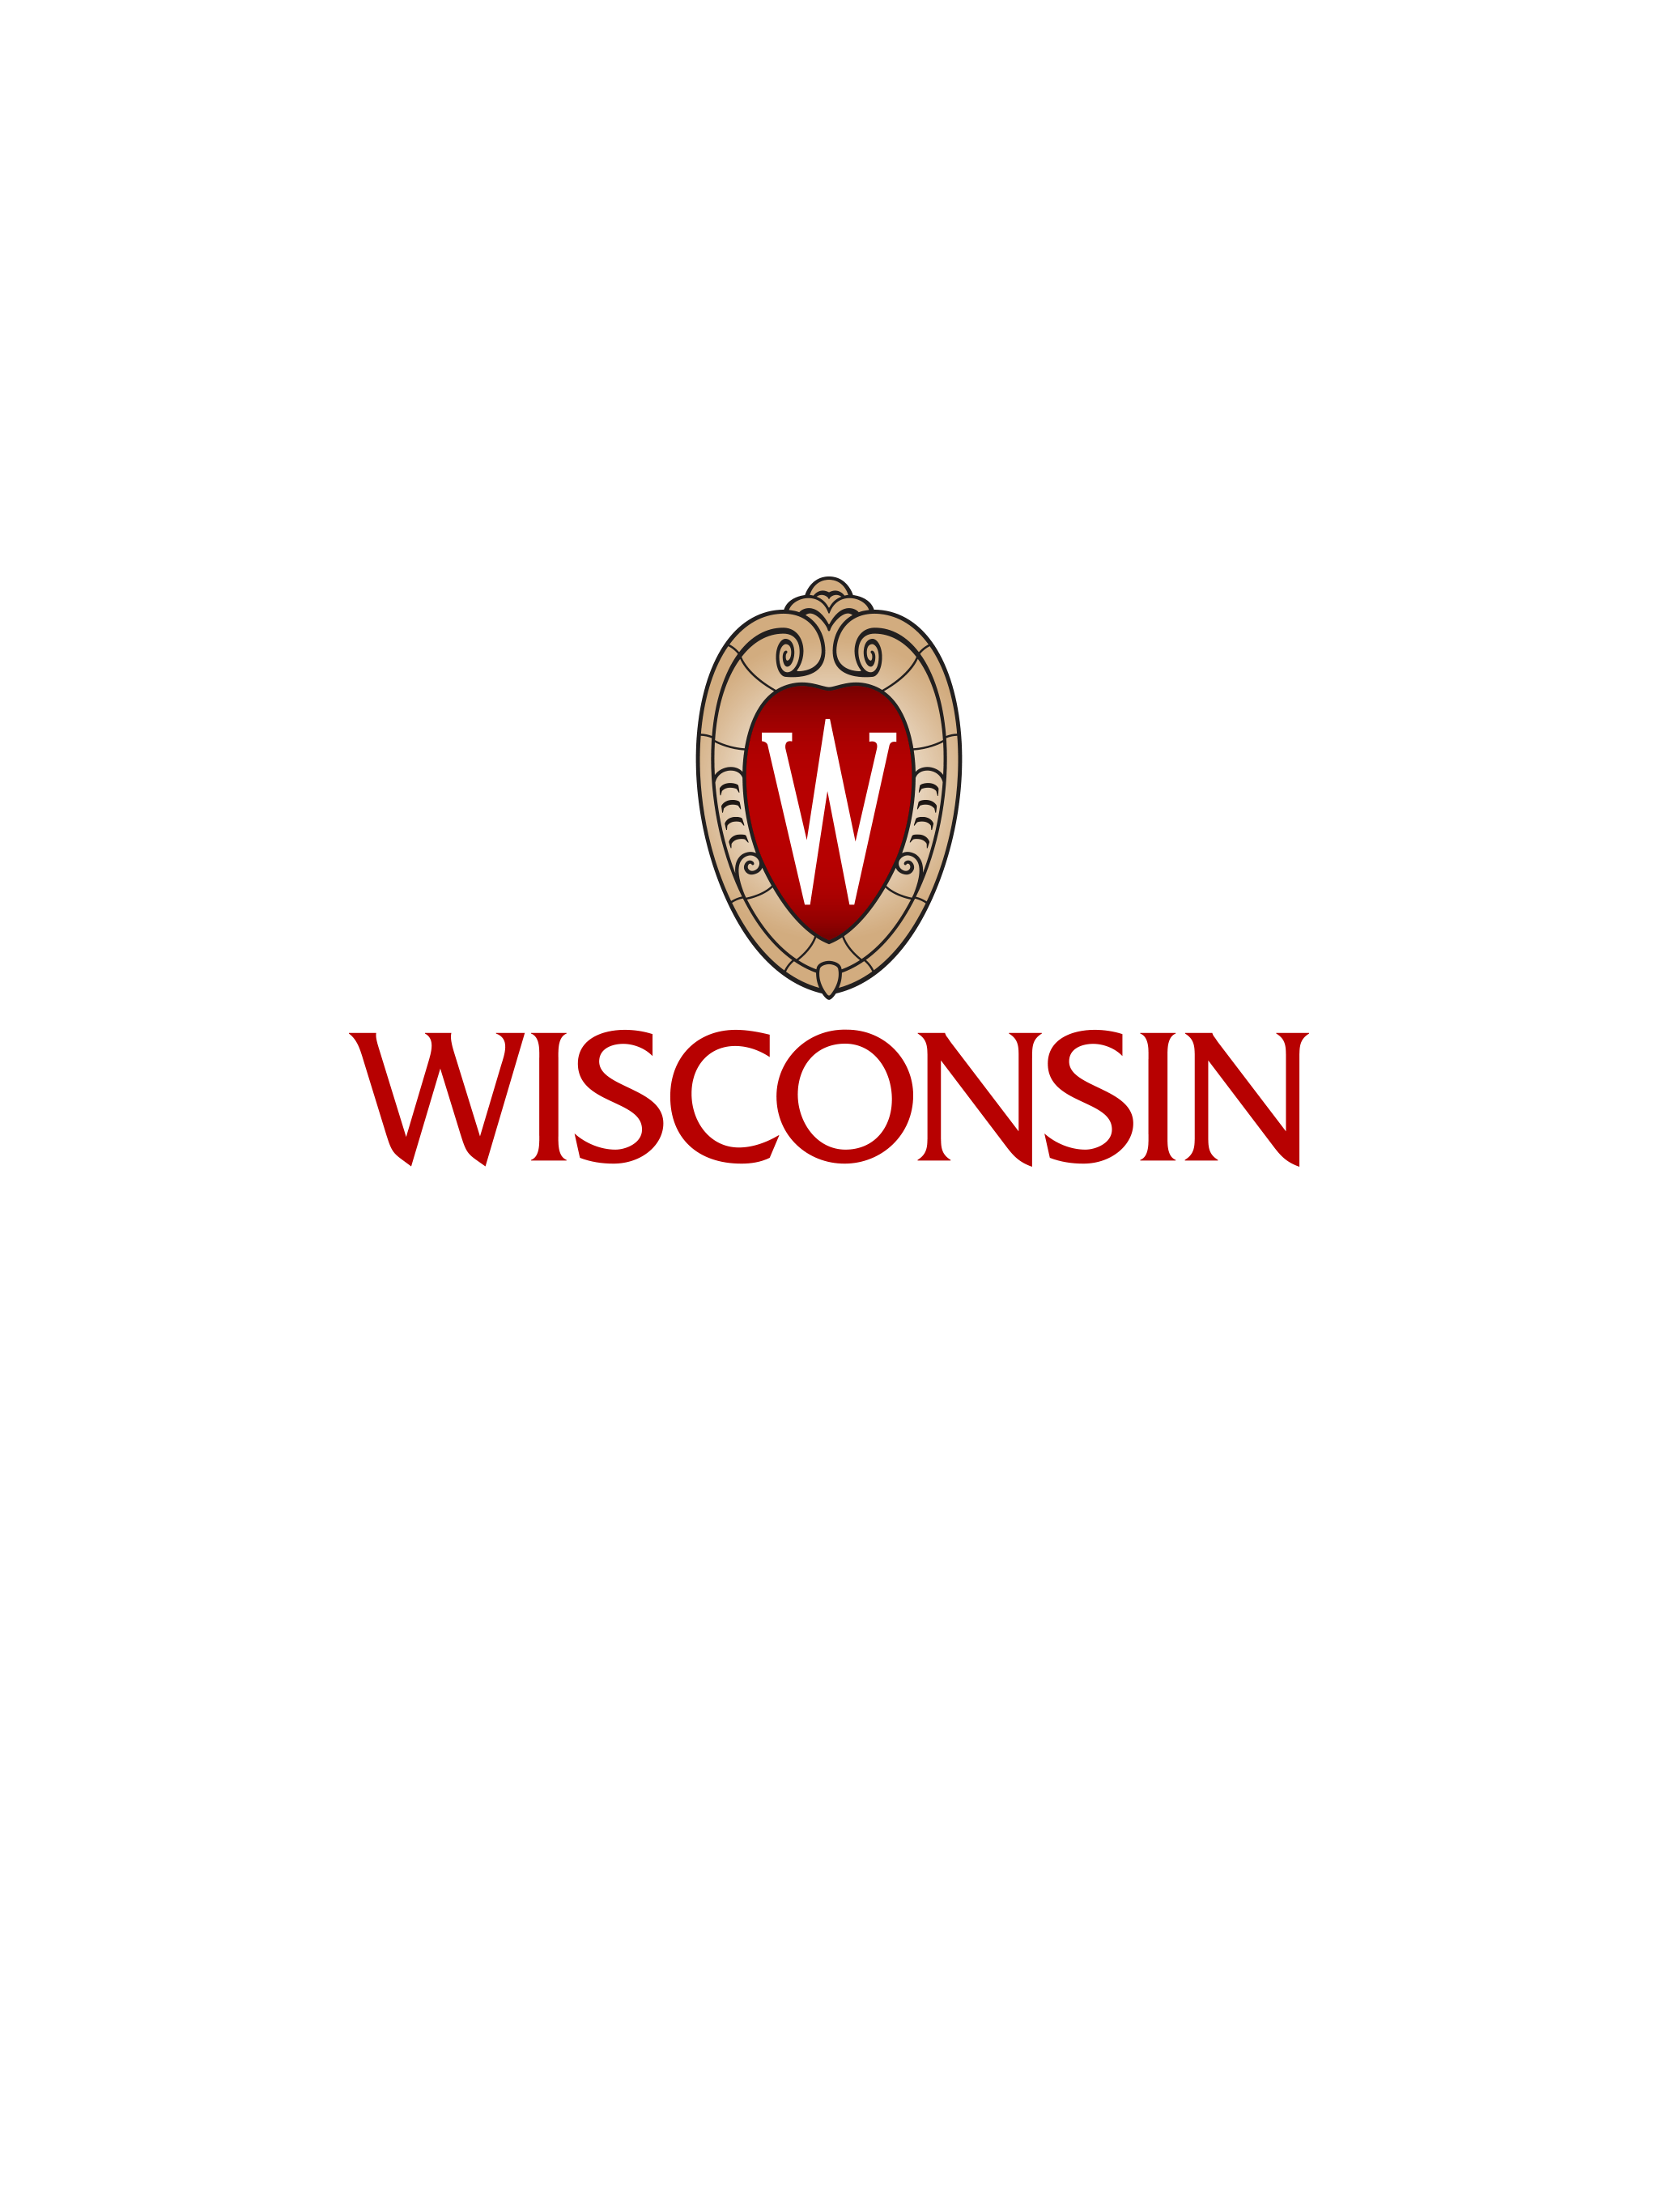 UW-Madison Logo - Get The UW Madison App